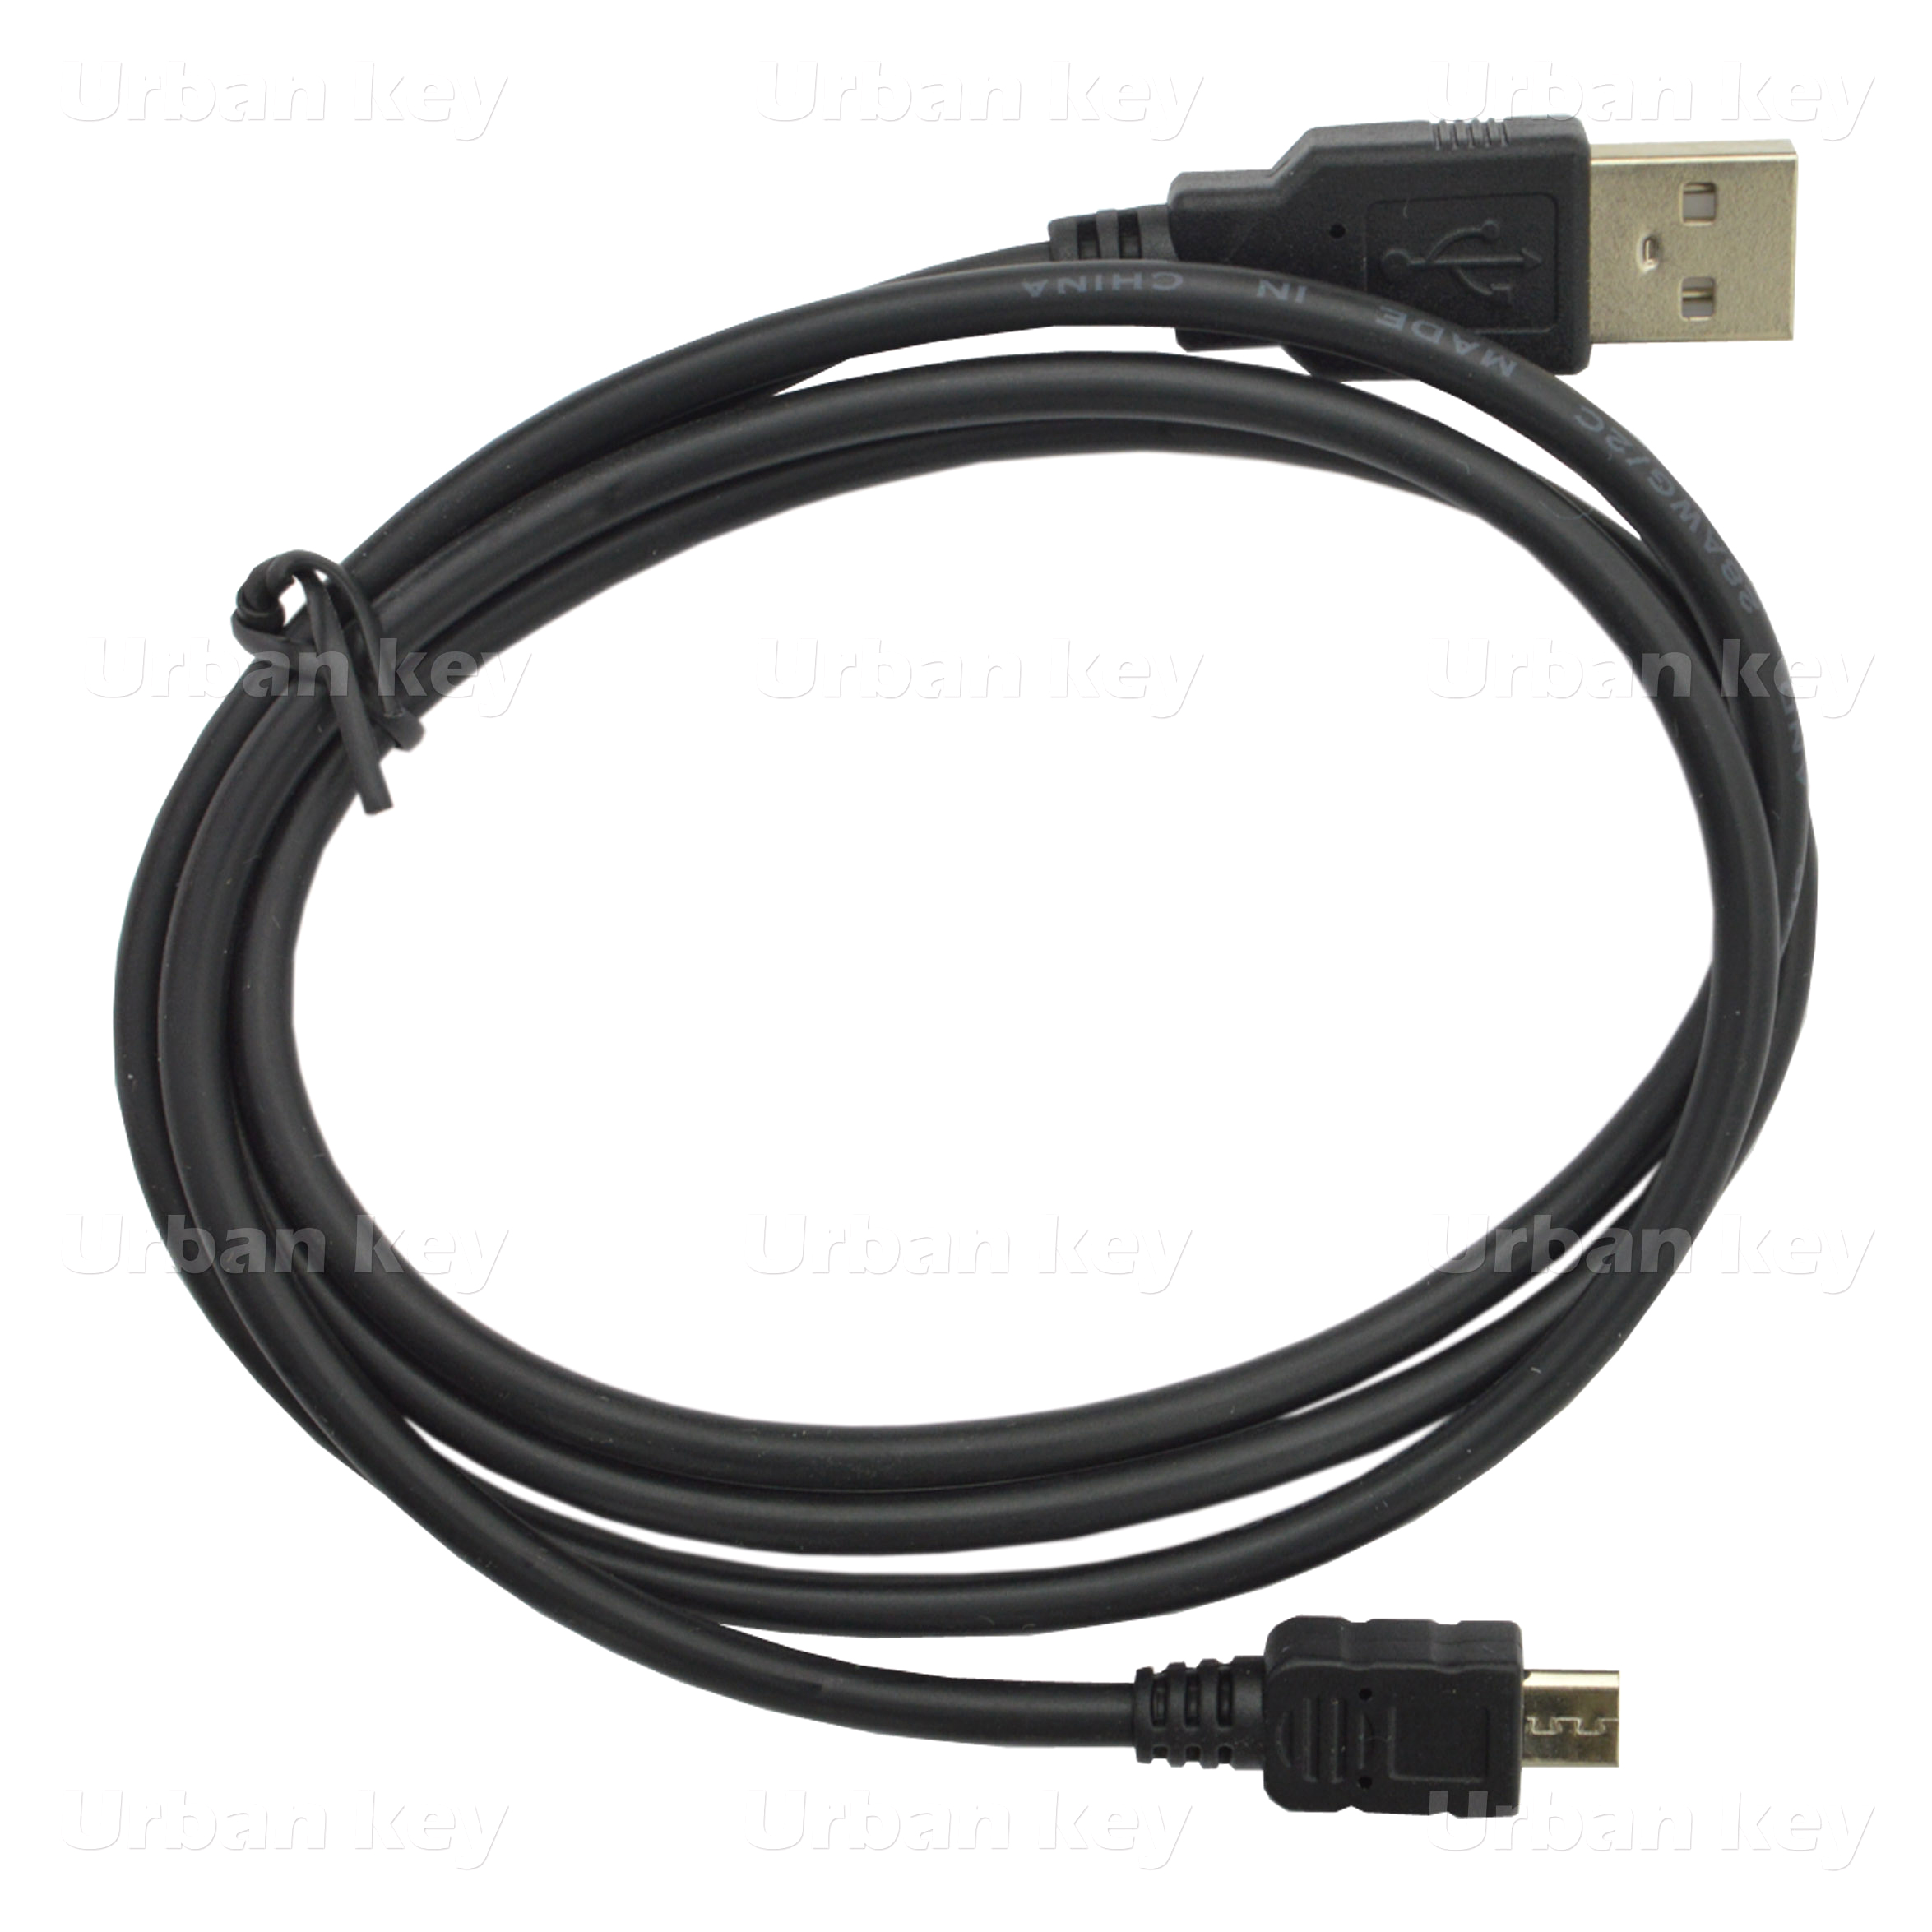 ADAPTADOR OTG MICRO USB PARA USB SMARTPHONES